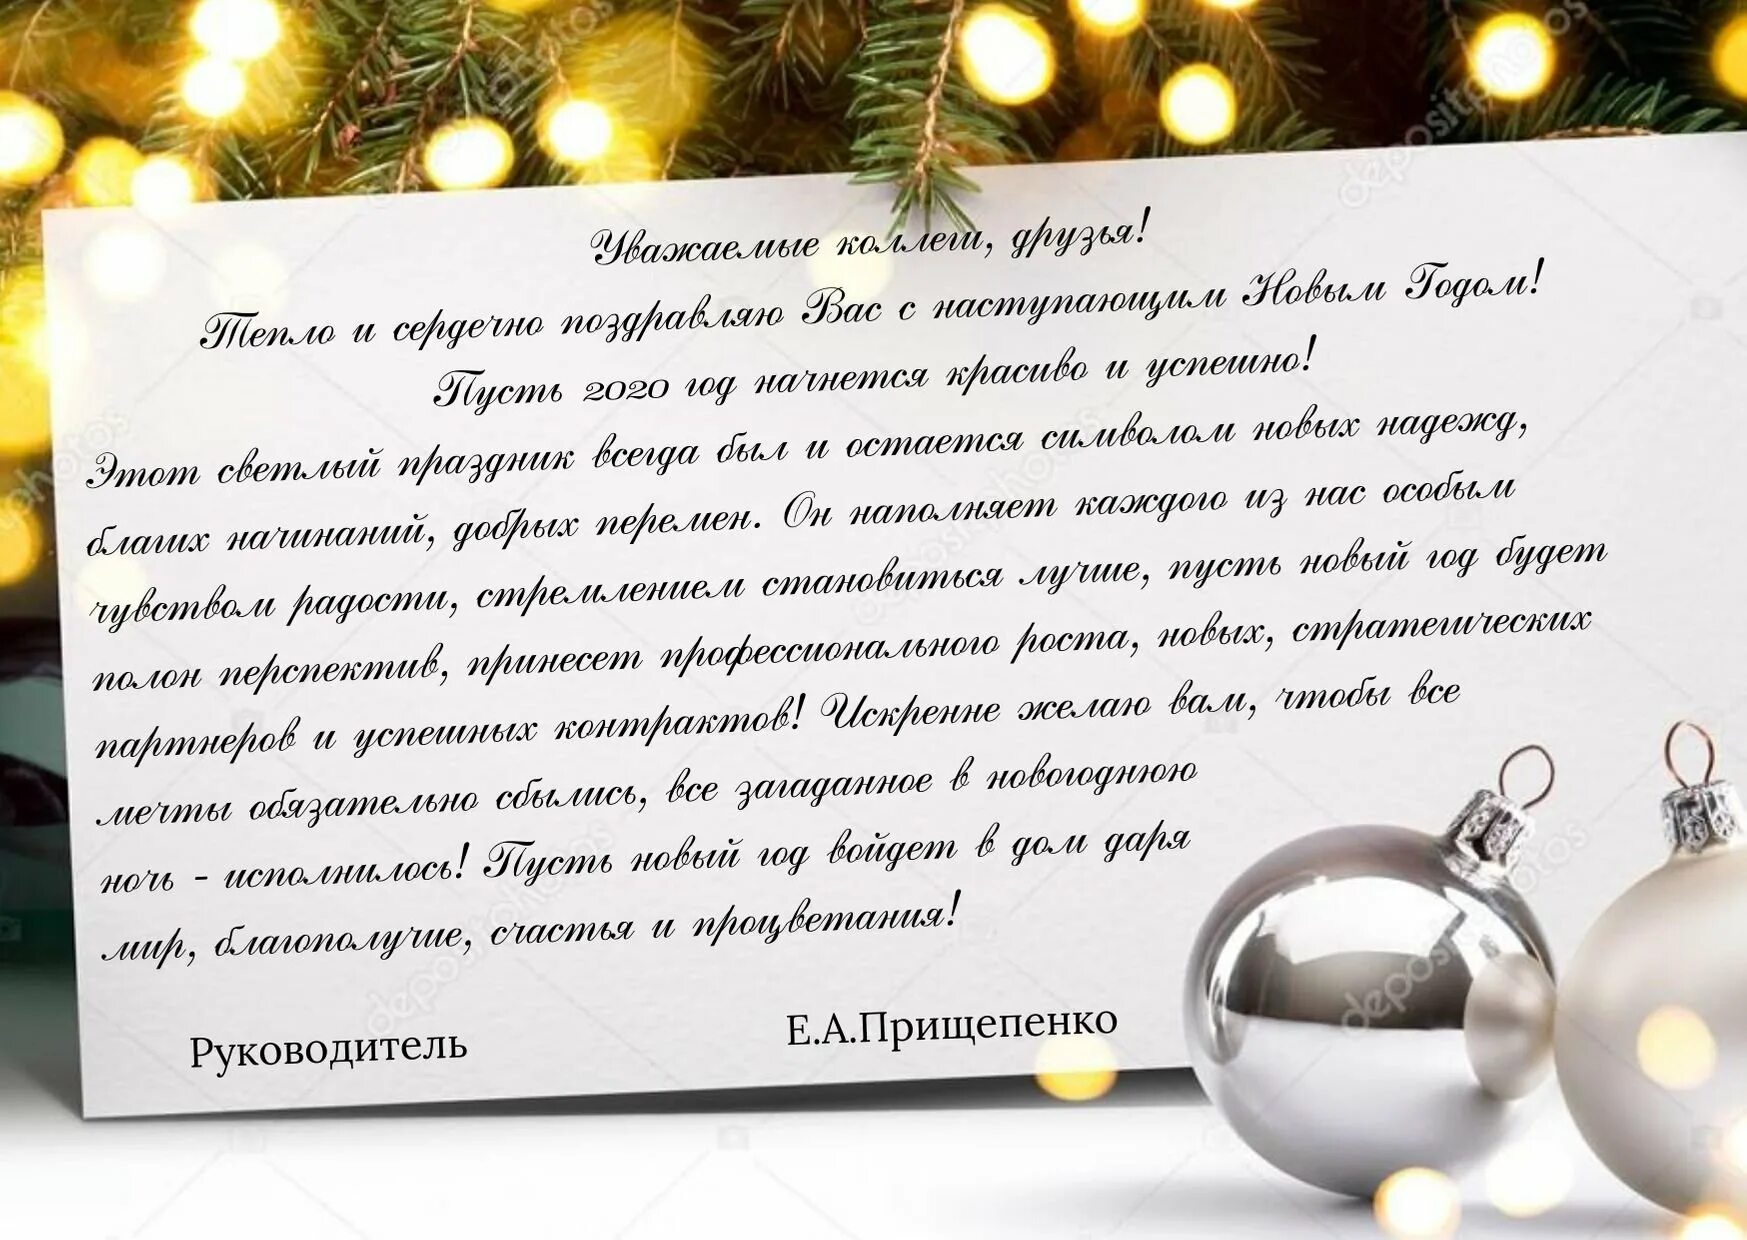 Пожелания на новый на татарском. Поздравление с новым годом руководителю. Поздравление коллектива с новым годом от руководителя. Новогодние поздравления руководителей с новым годом. Поздравление с новым годом начальнице.